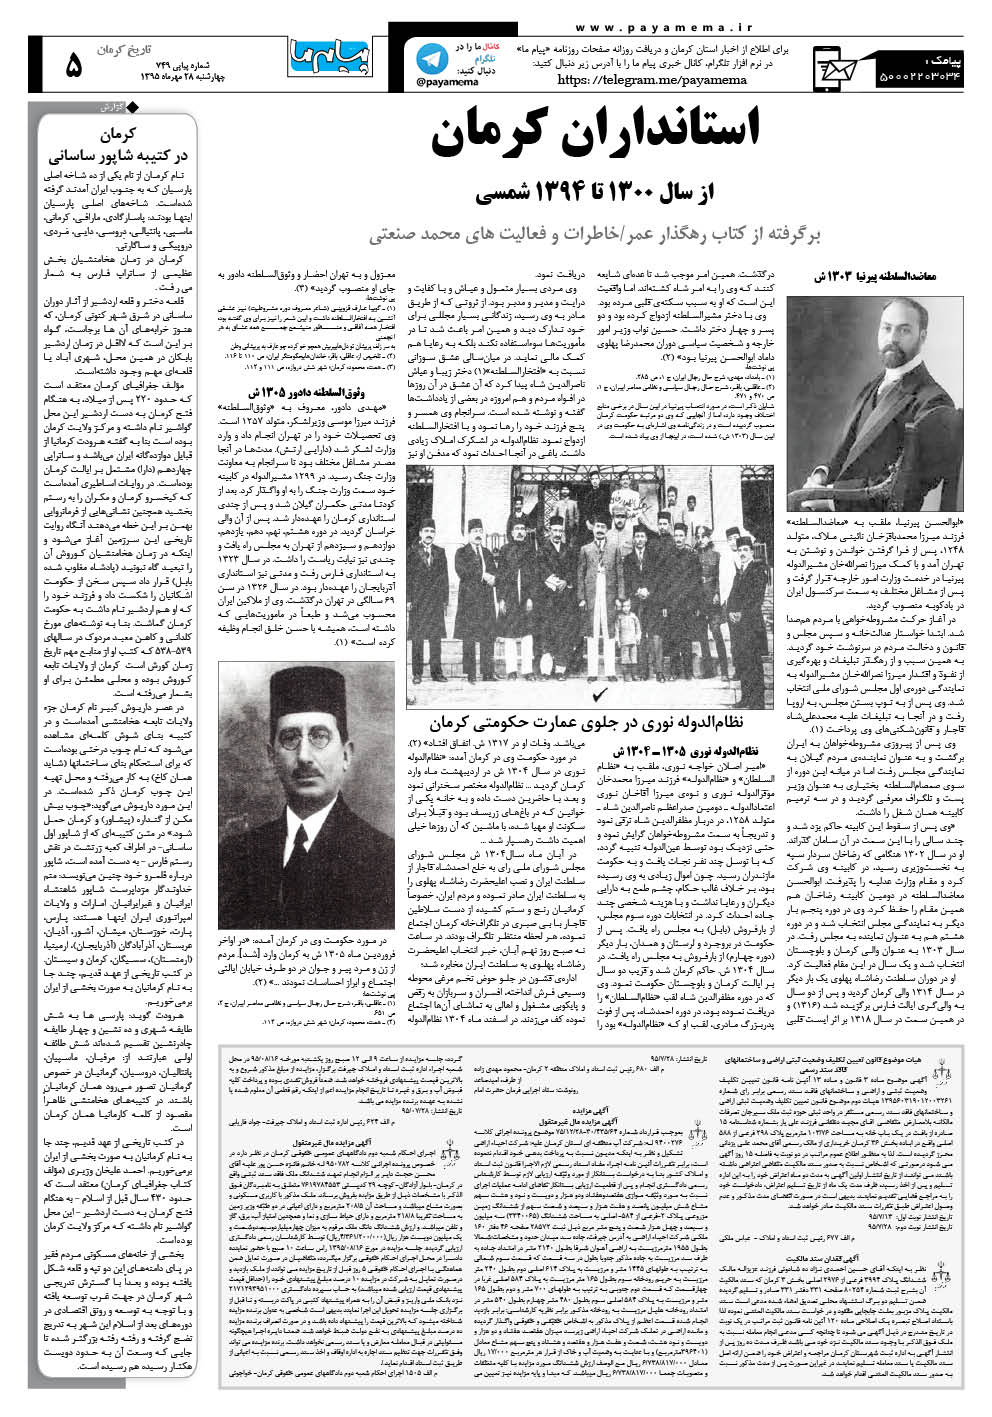 صفحه تاریخ کرمان شماره 749 روزنامه پیام ما